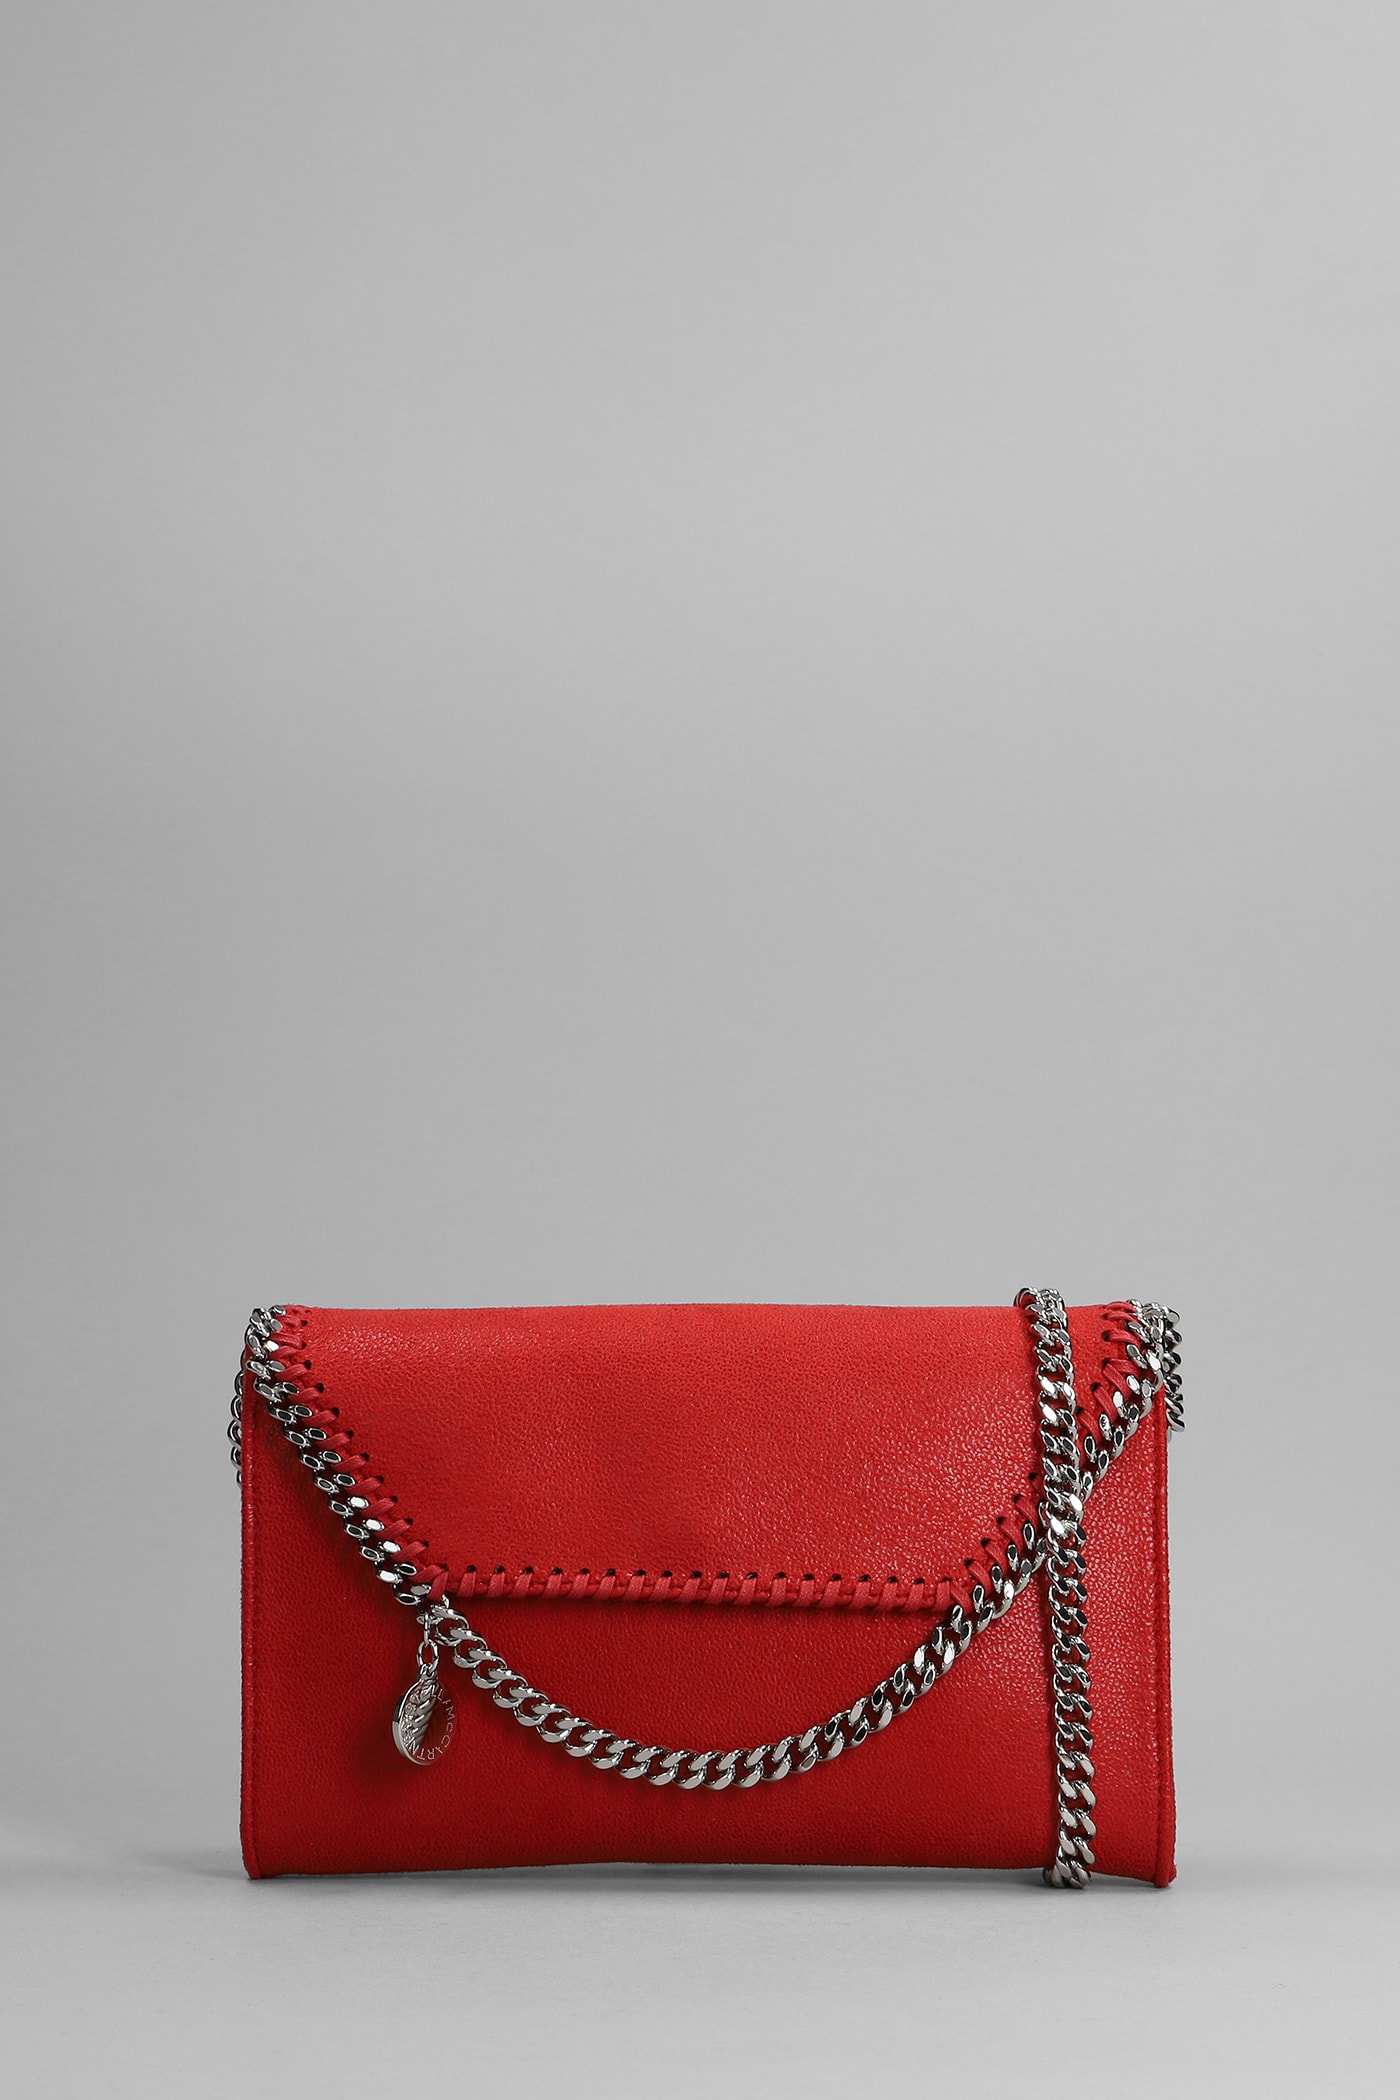 Stella McCartney Shoulder Bag In Red Polyester